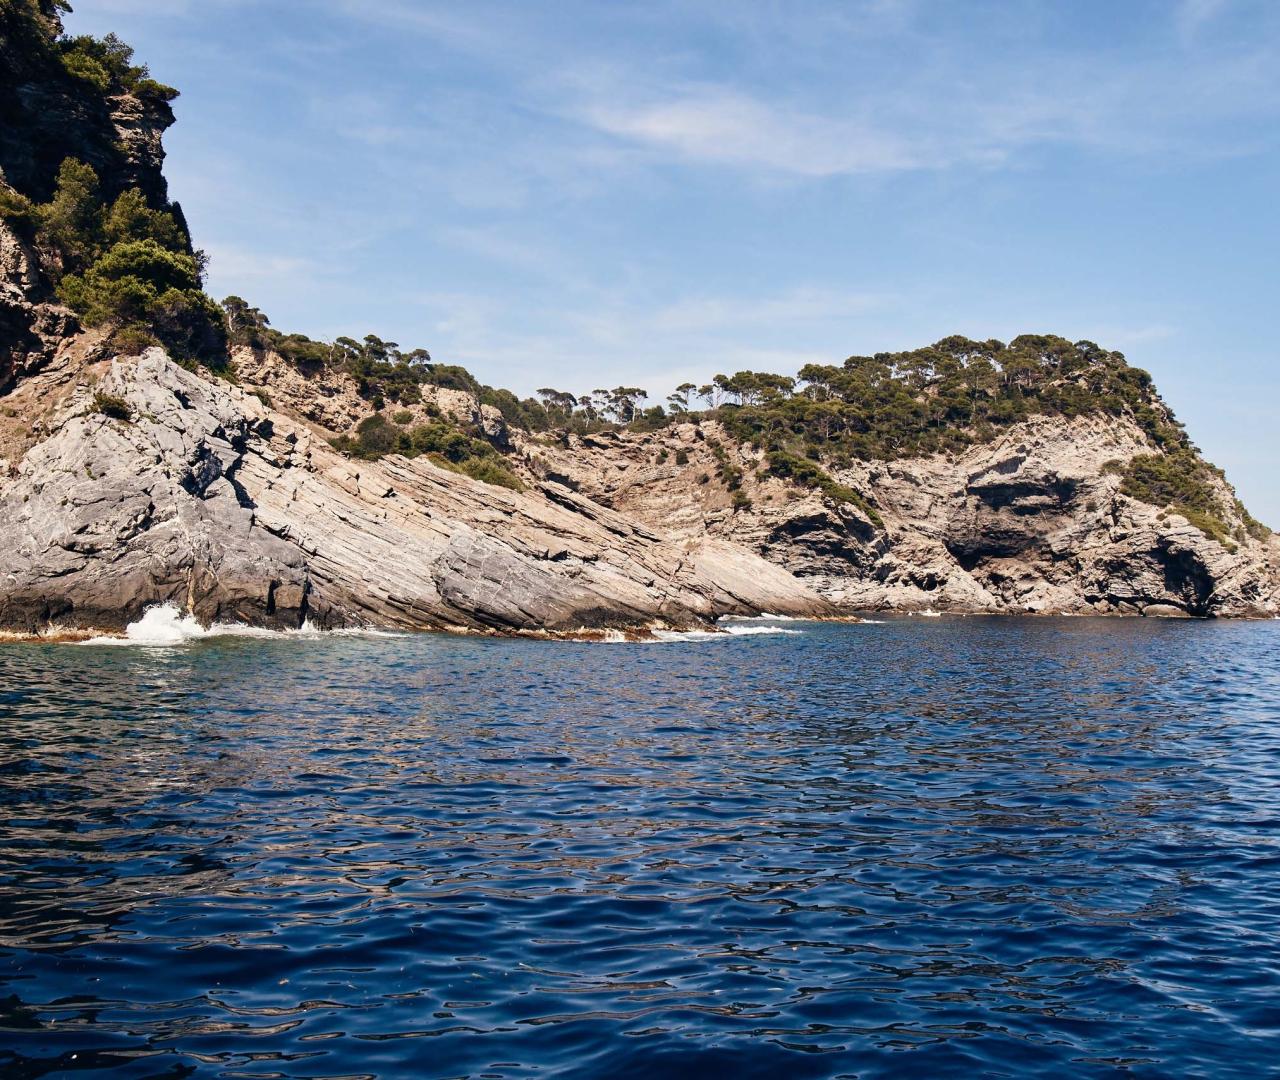 Découvrez la plongée sous marine ~ Profitez des sites de nos sites de plongées parmi les plus beaux de Méditerranée  